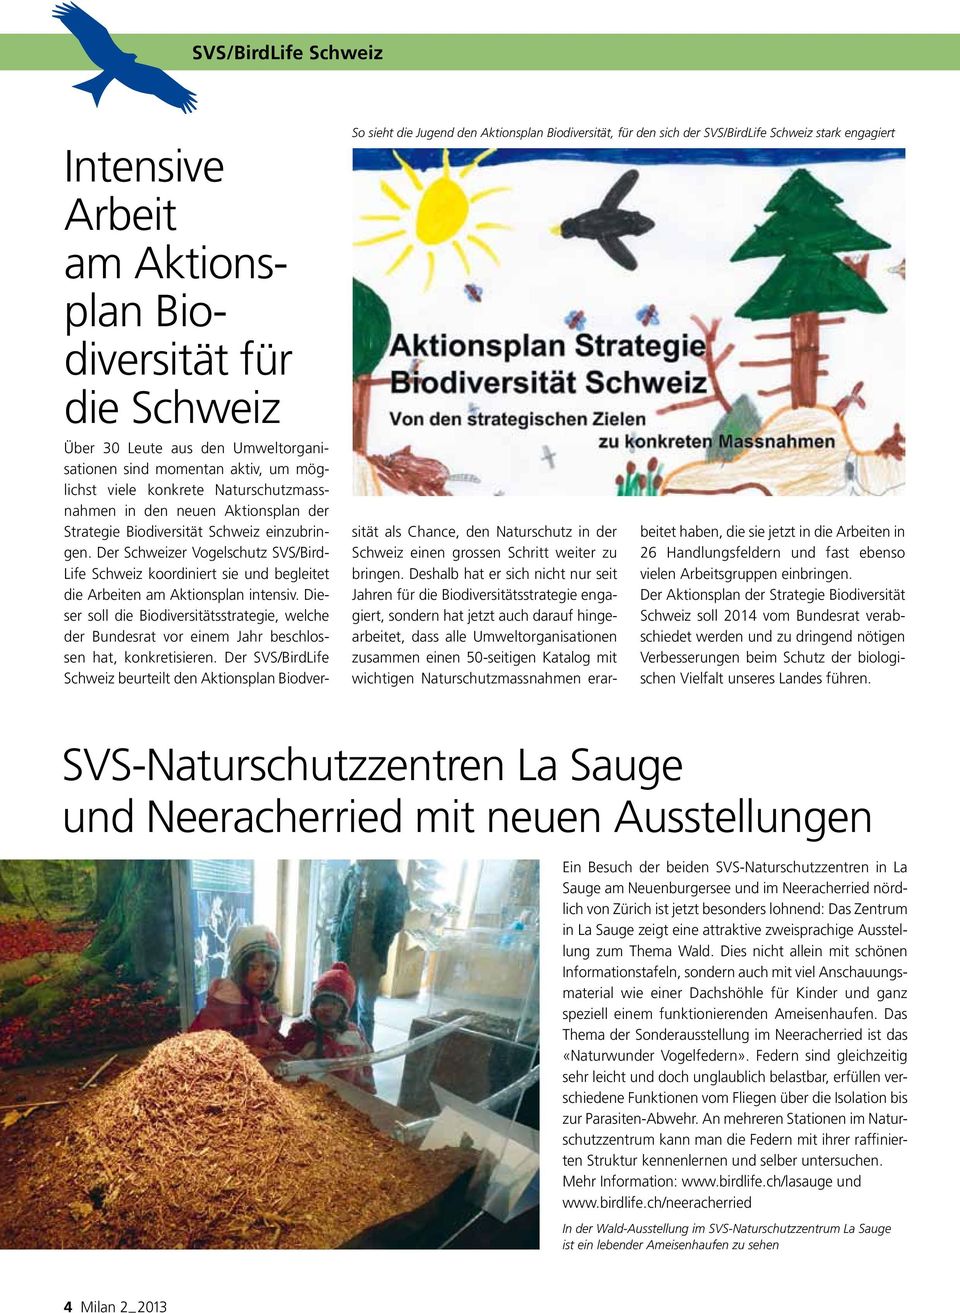 Der Schweizer Vogelschutz SVS/Bird Life Schweiz koordiniert sie und begleitet die Arbeiten am Aktionsplan intensiv.